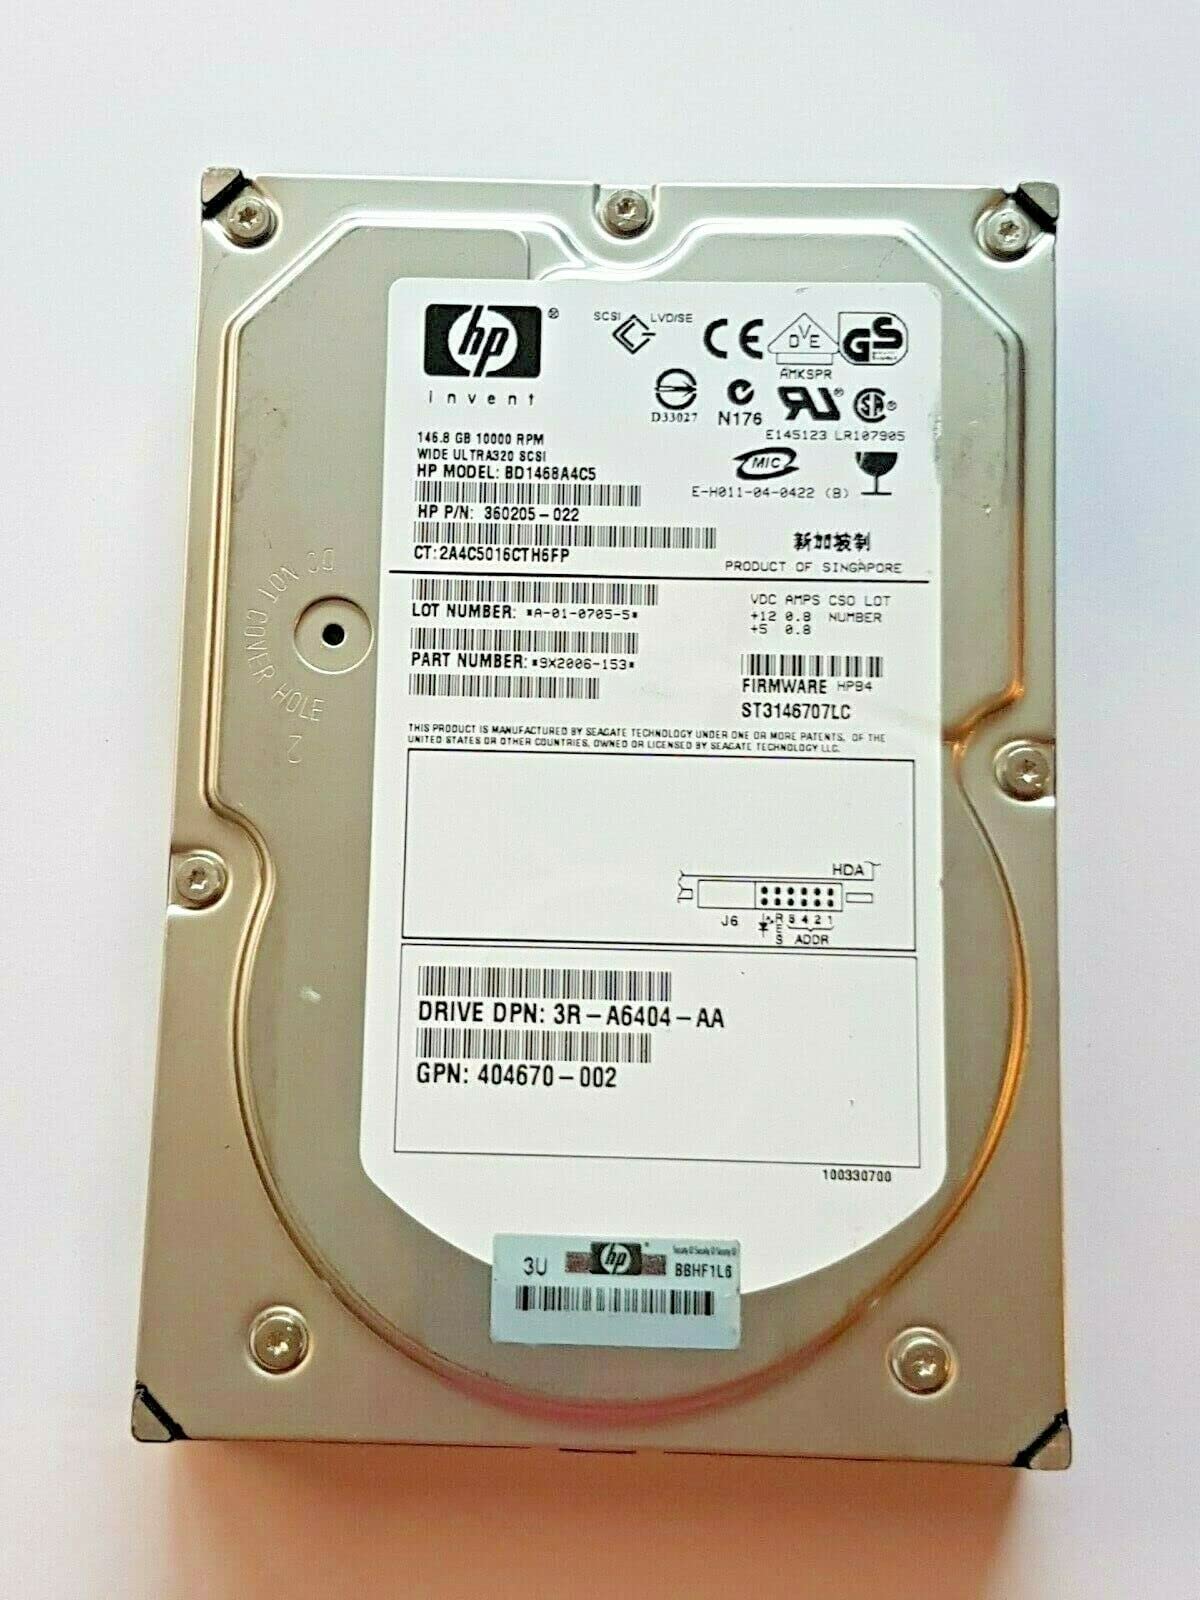 Festplatte 146.8 GB BD1468A4C5 10000 RPM Wide Ultra-320 SCSI HDD 80-pin 3.5"